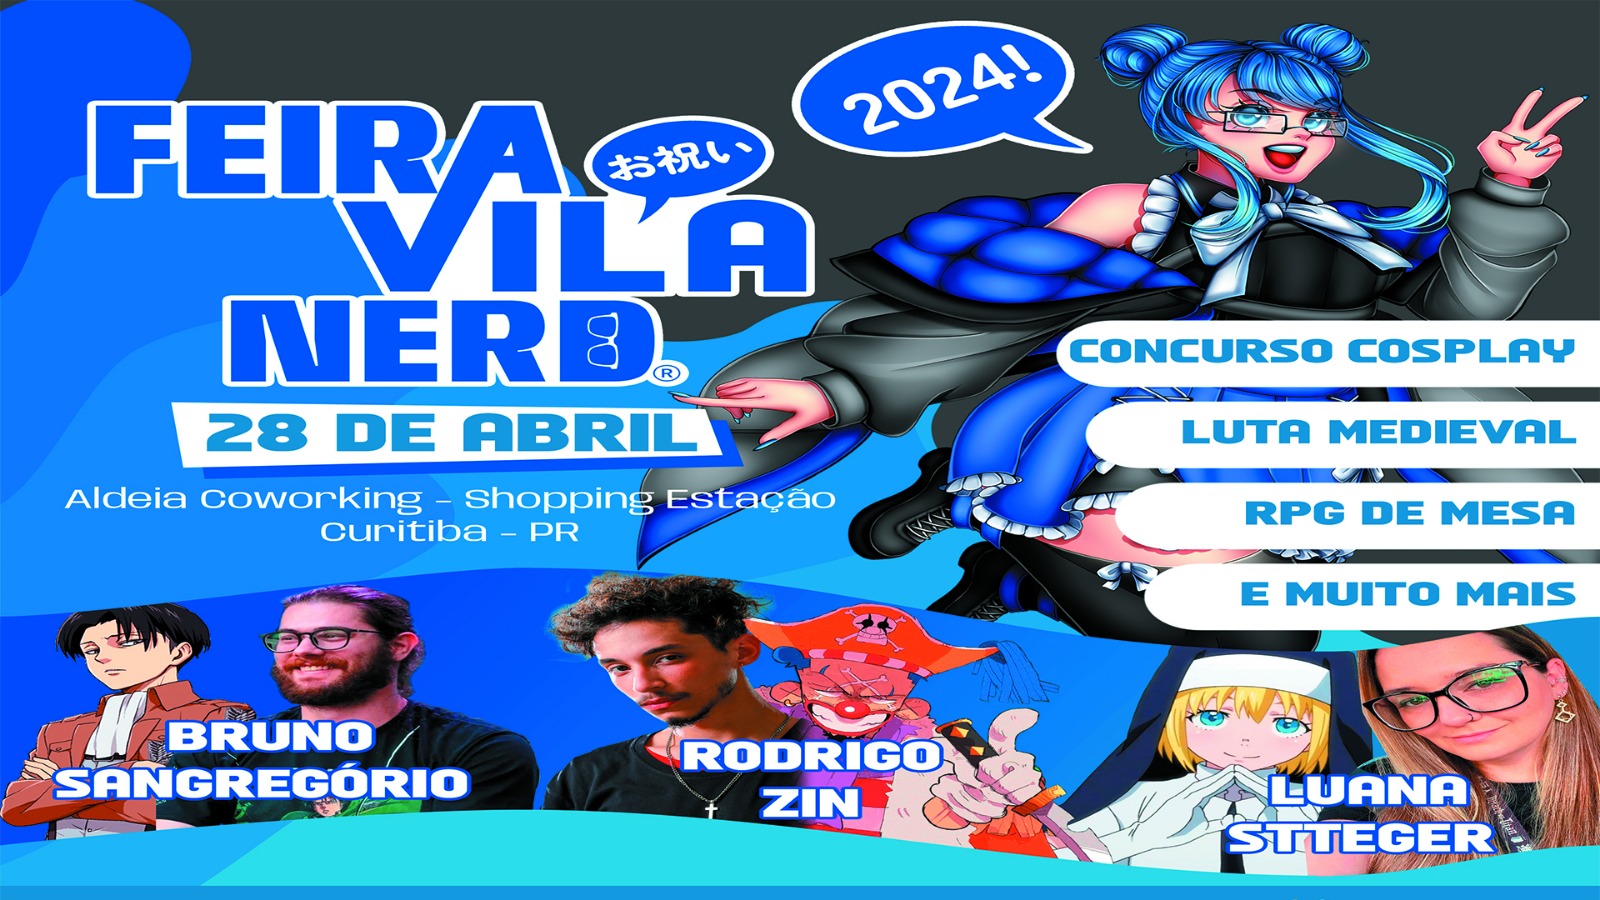 Banner oficial do evento Feira Vila Nerd, indicando o local, a data e quais são os convidados do evento.